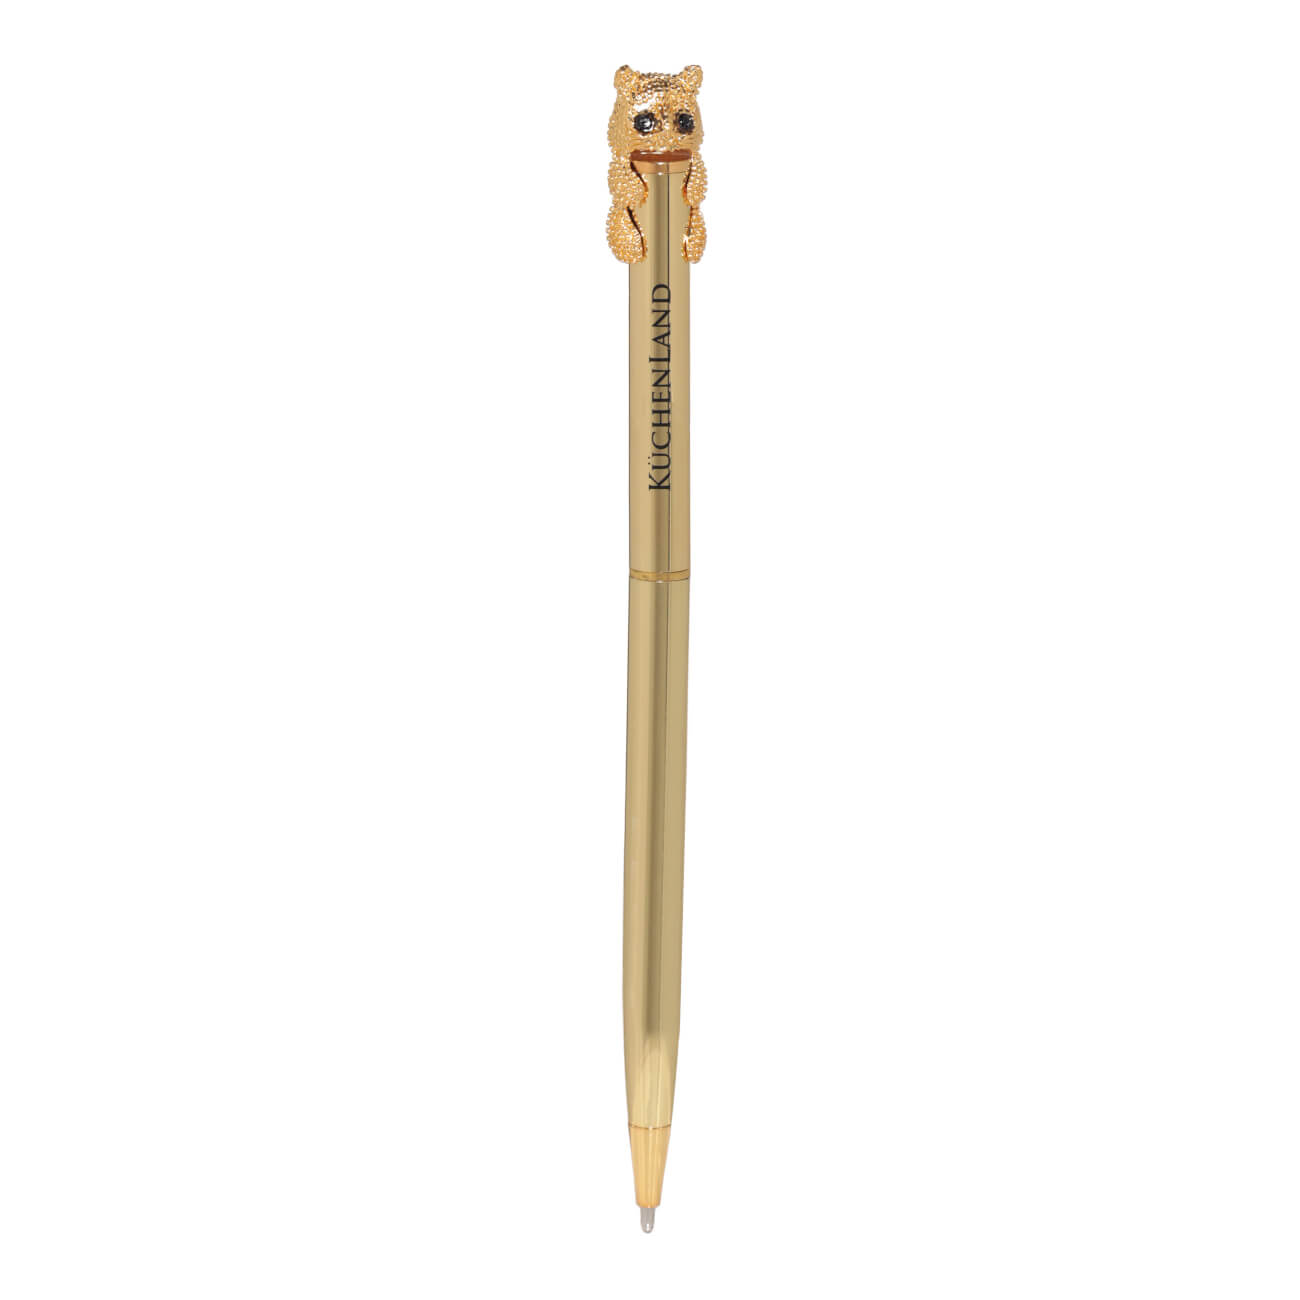 Ручка шариковая, 14 см, с фигуркой, золотистая, Кот, Draw figure изображение № 1